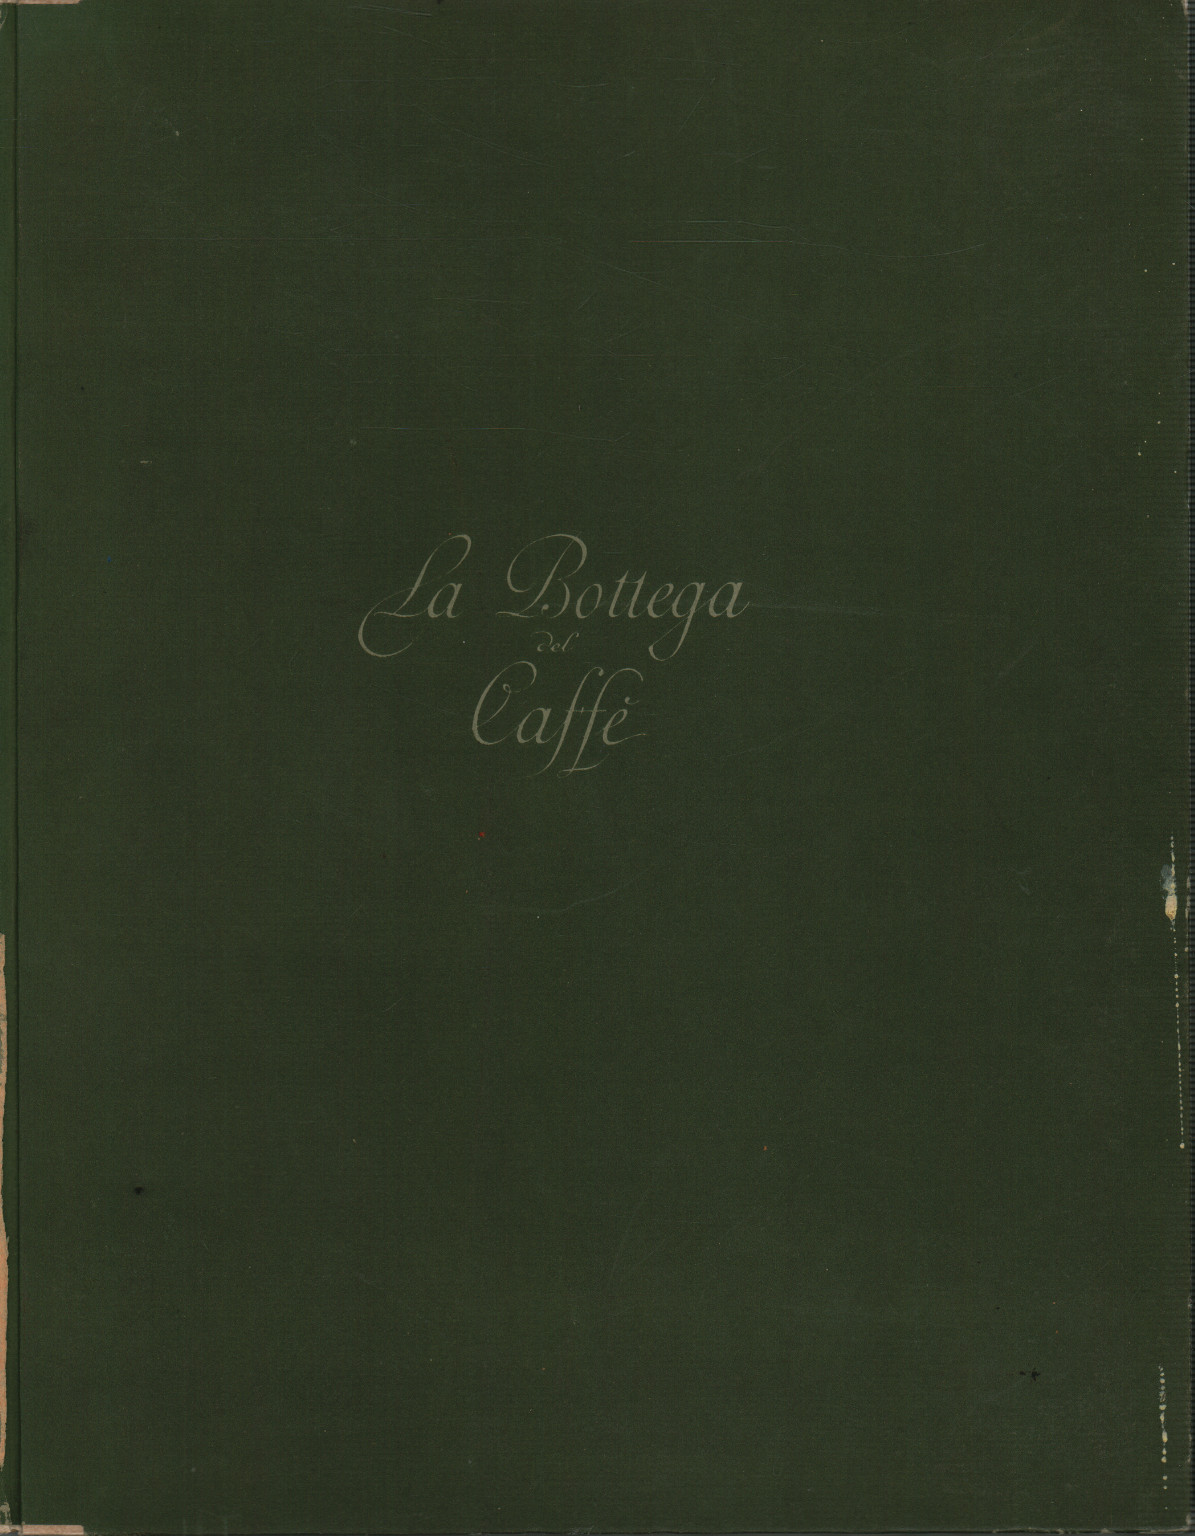 La Bottega del Caffè, s.a.